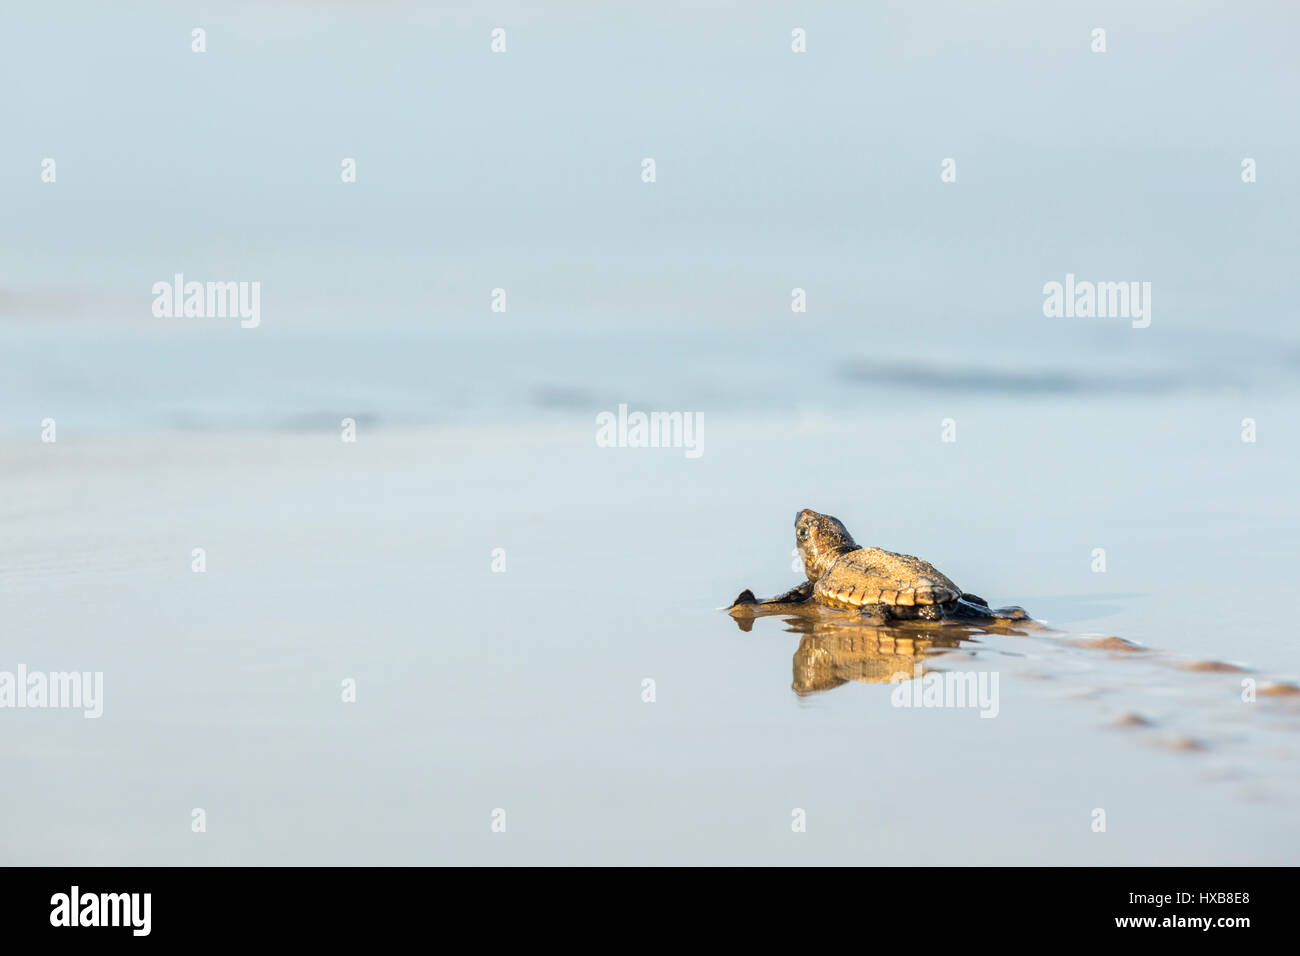 Bébé tortue caouanne (Caretta caretta) faire son voyage vers la mer. Mon Repos Conservation Park, Bundaberg, Queensland, Australie Banque D'Images